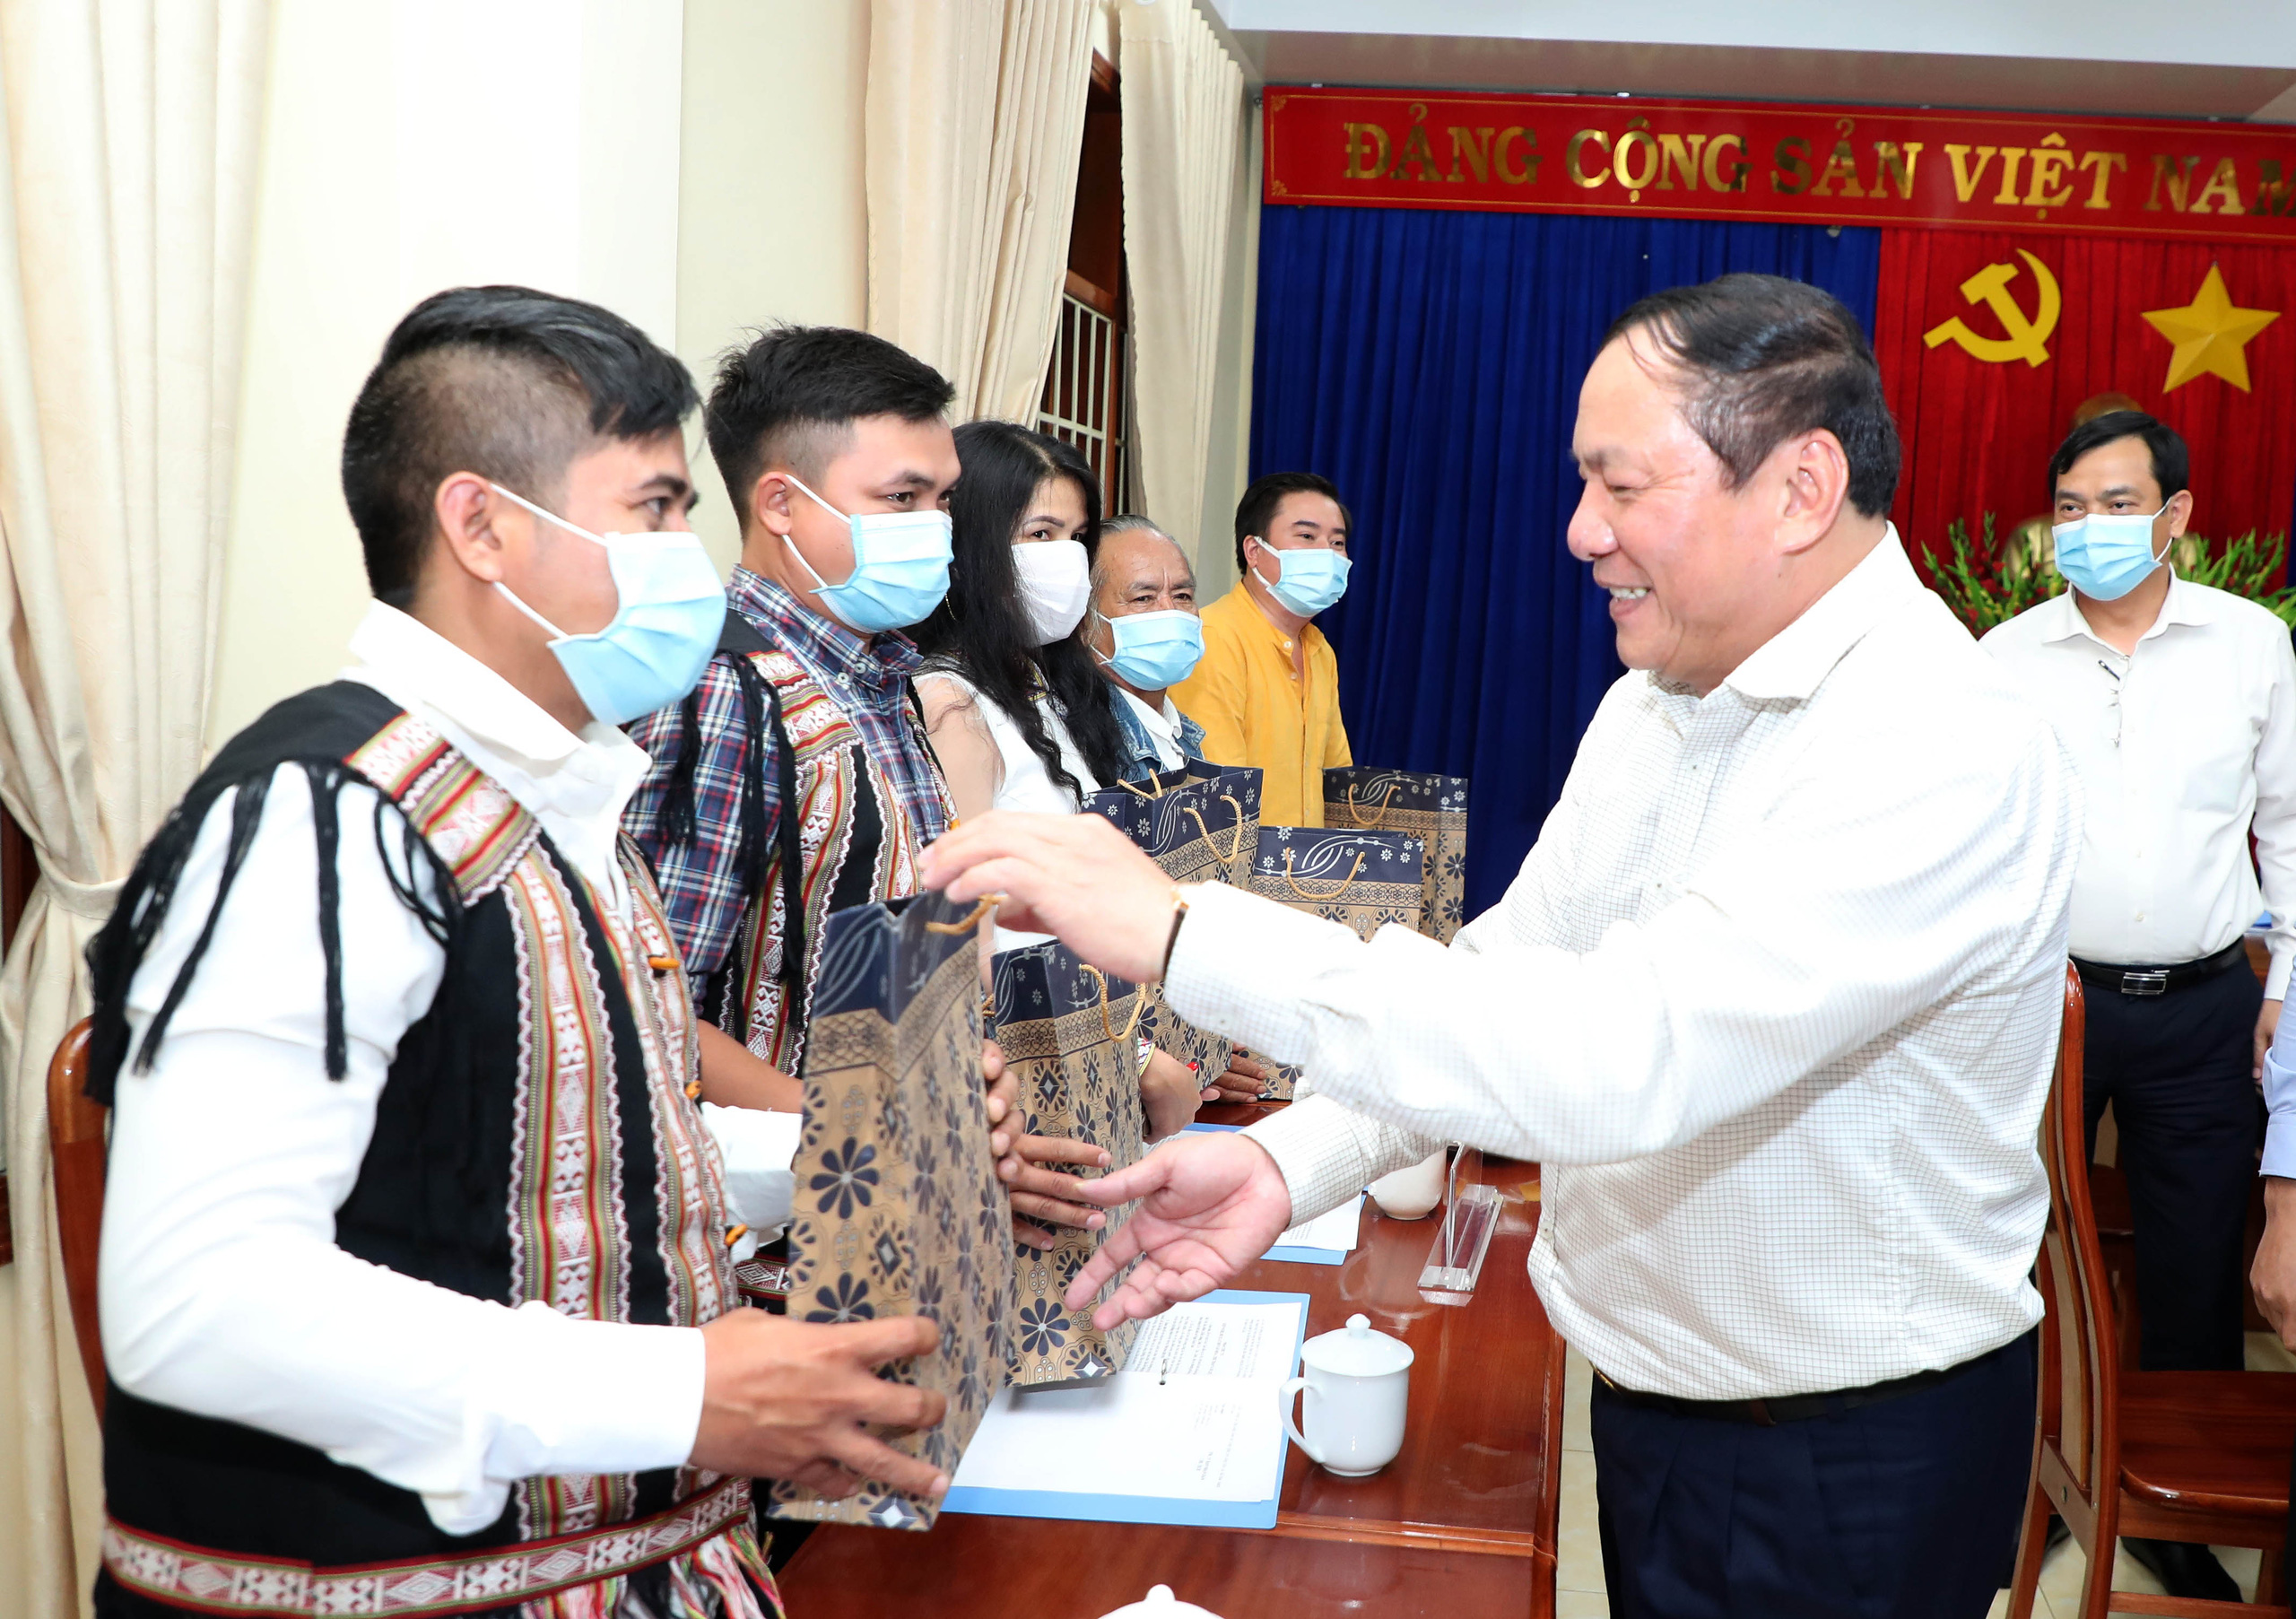 Bộ trưởng Nguyễn Văn Hùng: “Kon Tum có quang cảnh đẹp, sao không mạnh dạn đặt ước mơ trở thành trung tâm hội nghị của khu vực miền Trung-Tây Nguyên” - Ảnh 8.